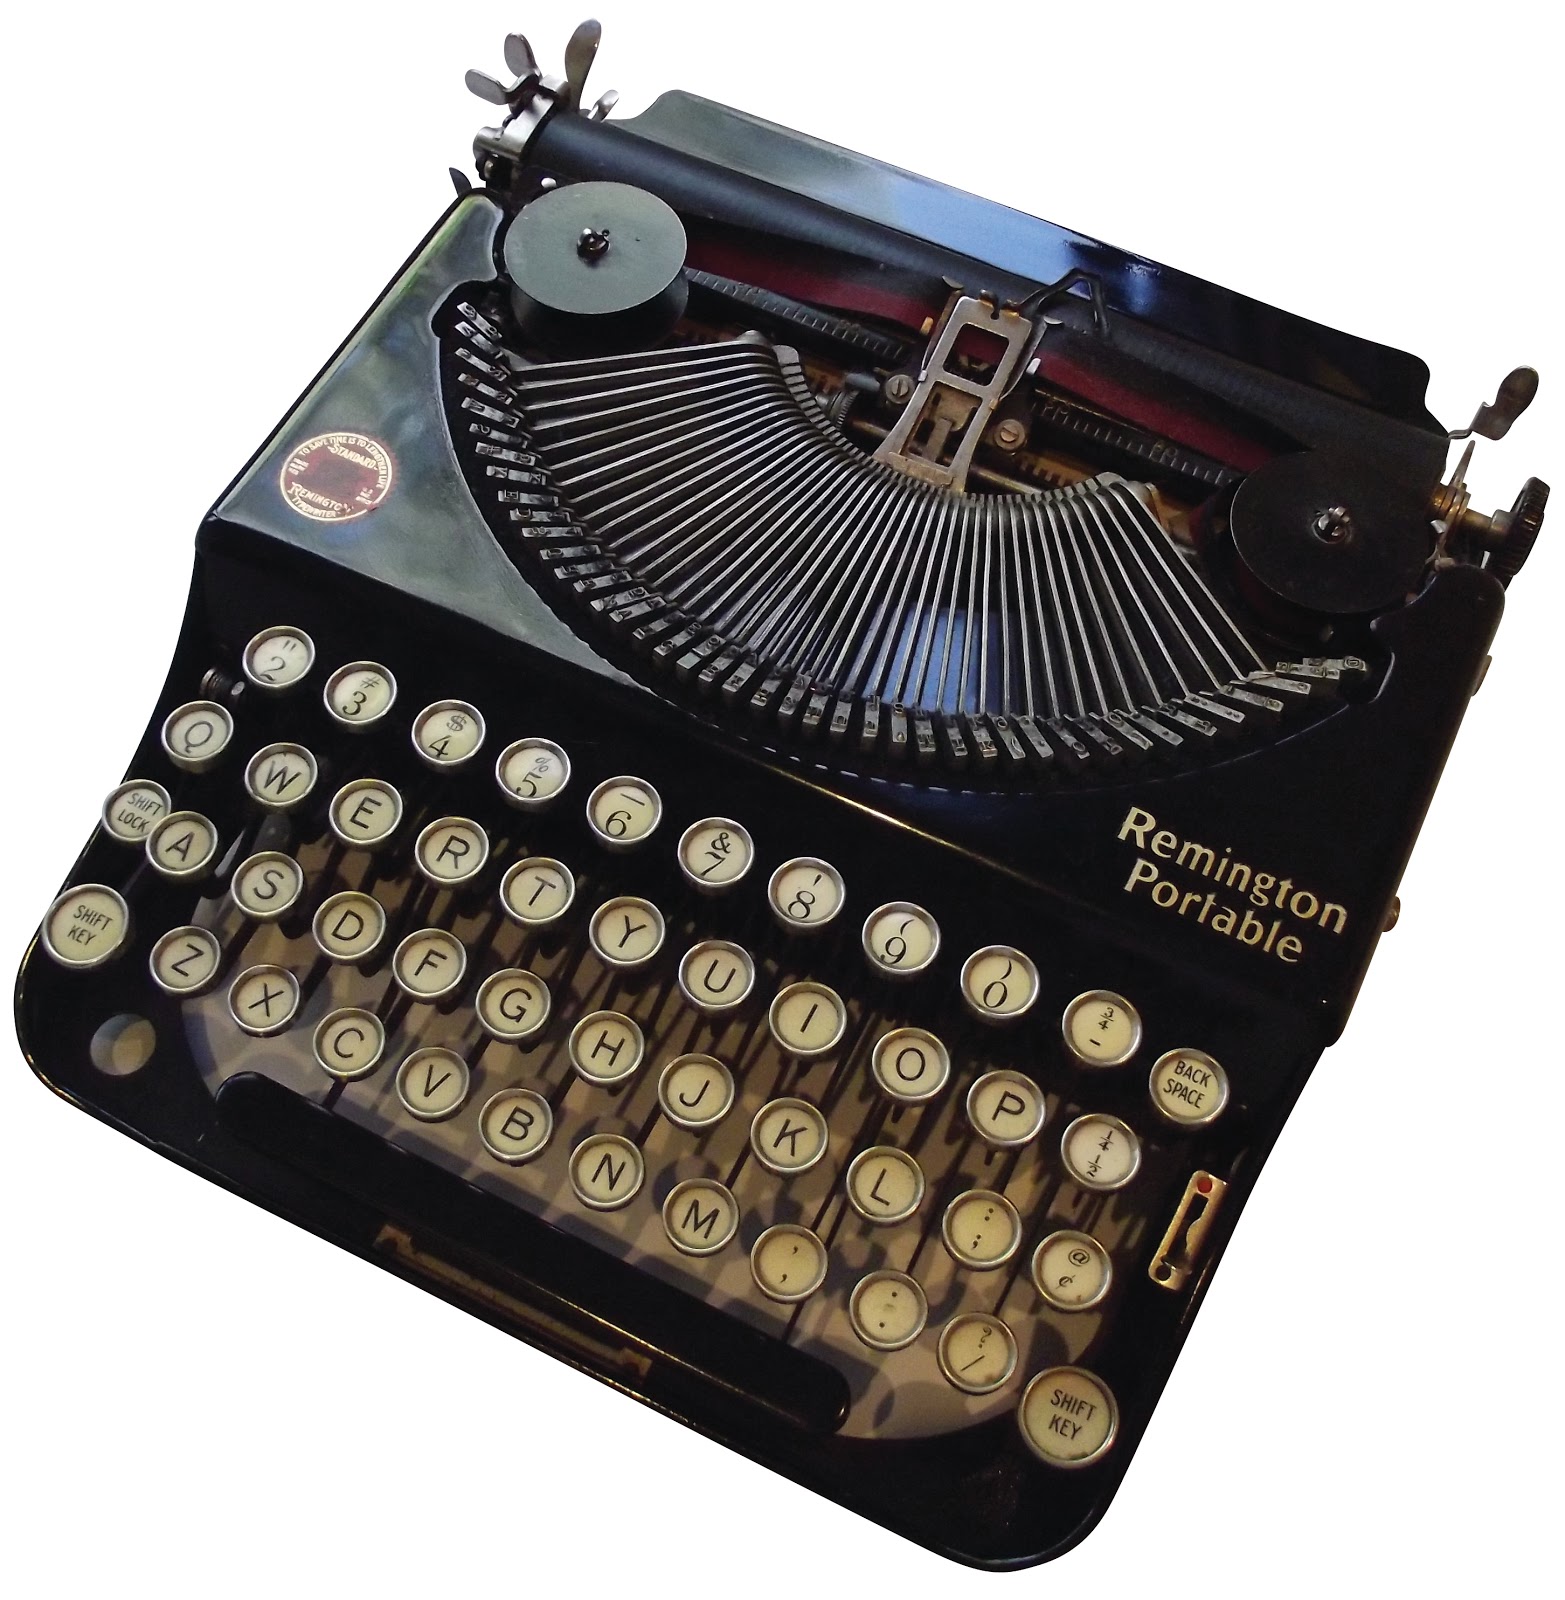 Antique Royal Standard Typewriter c. 1921